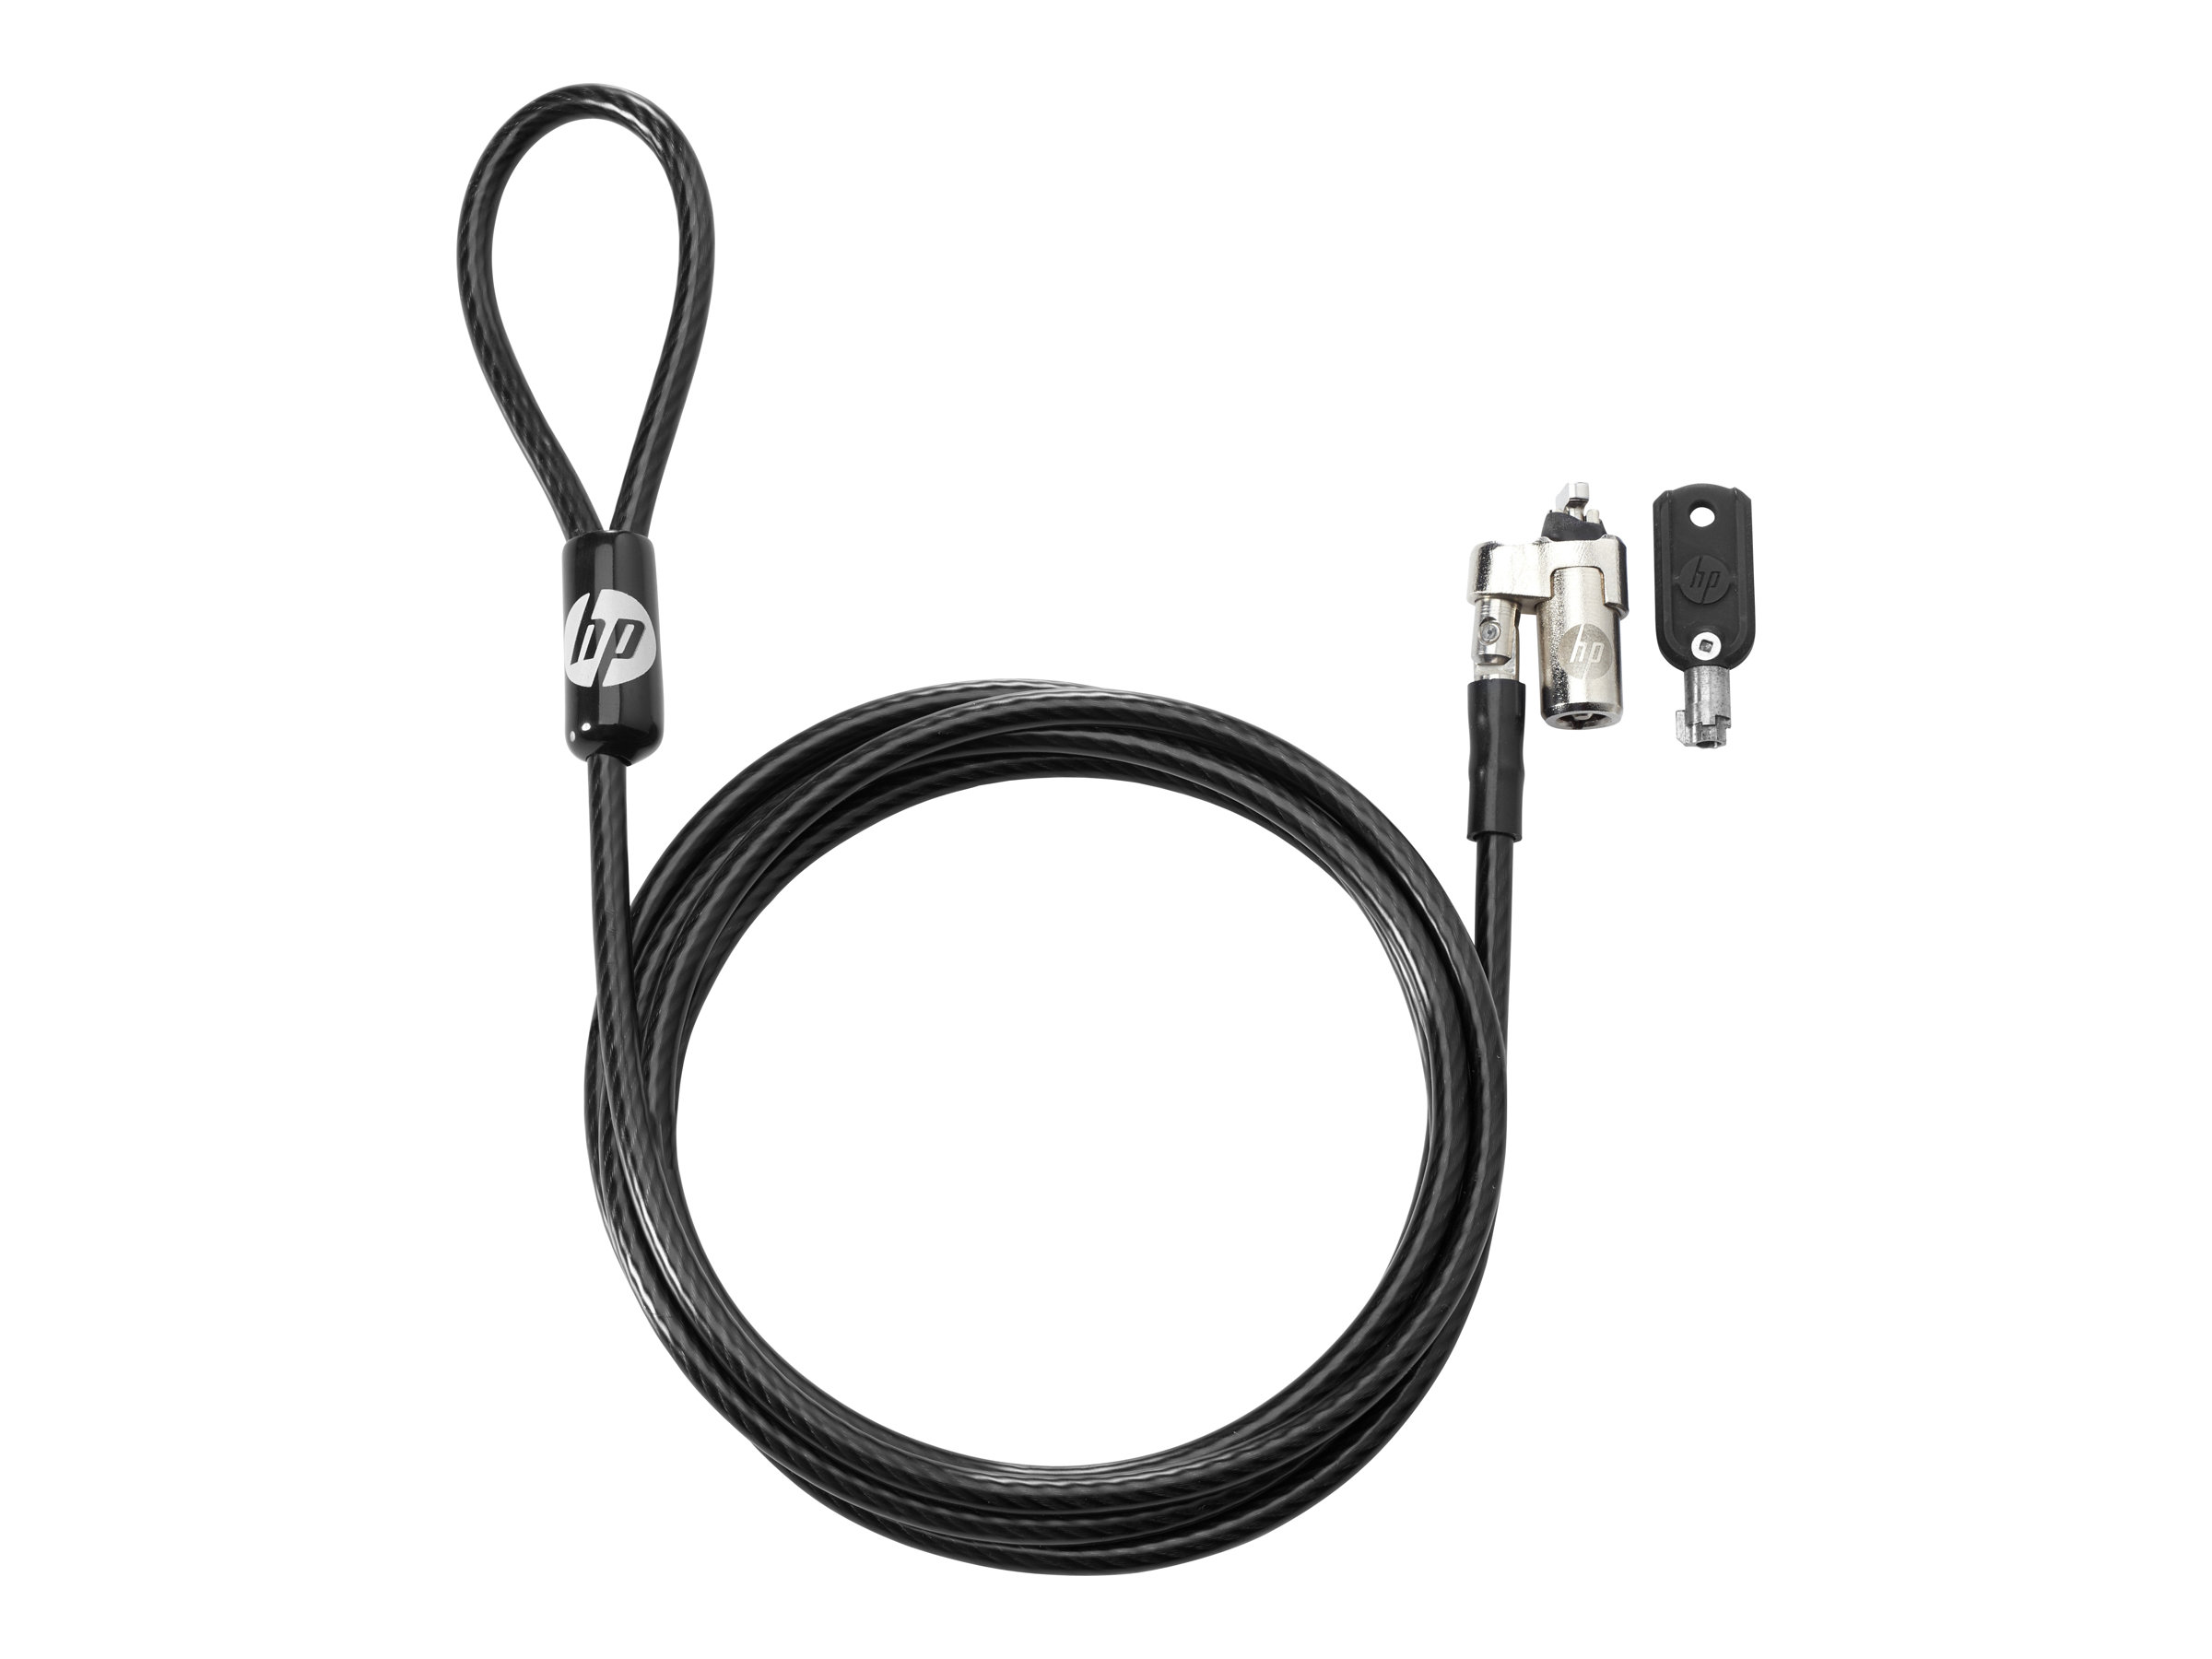 HP Keyed Cable Lock - Sicherheitskabelschloss - 1.83 m